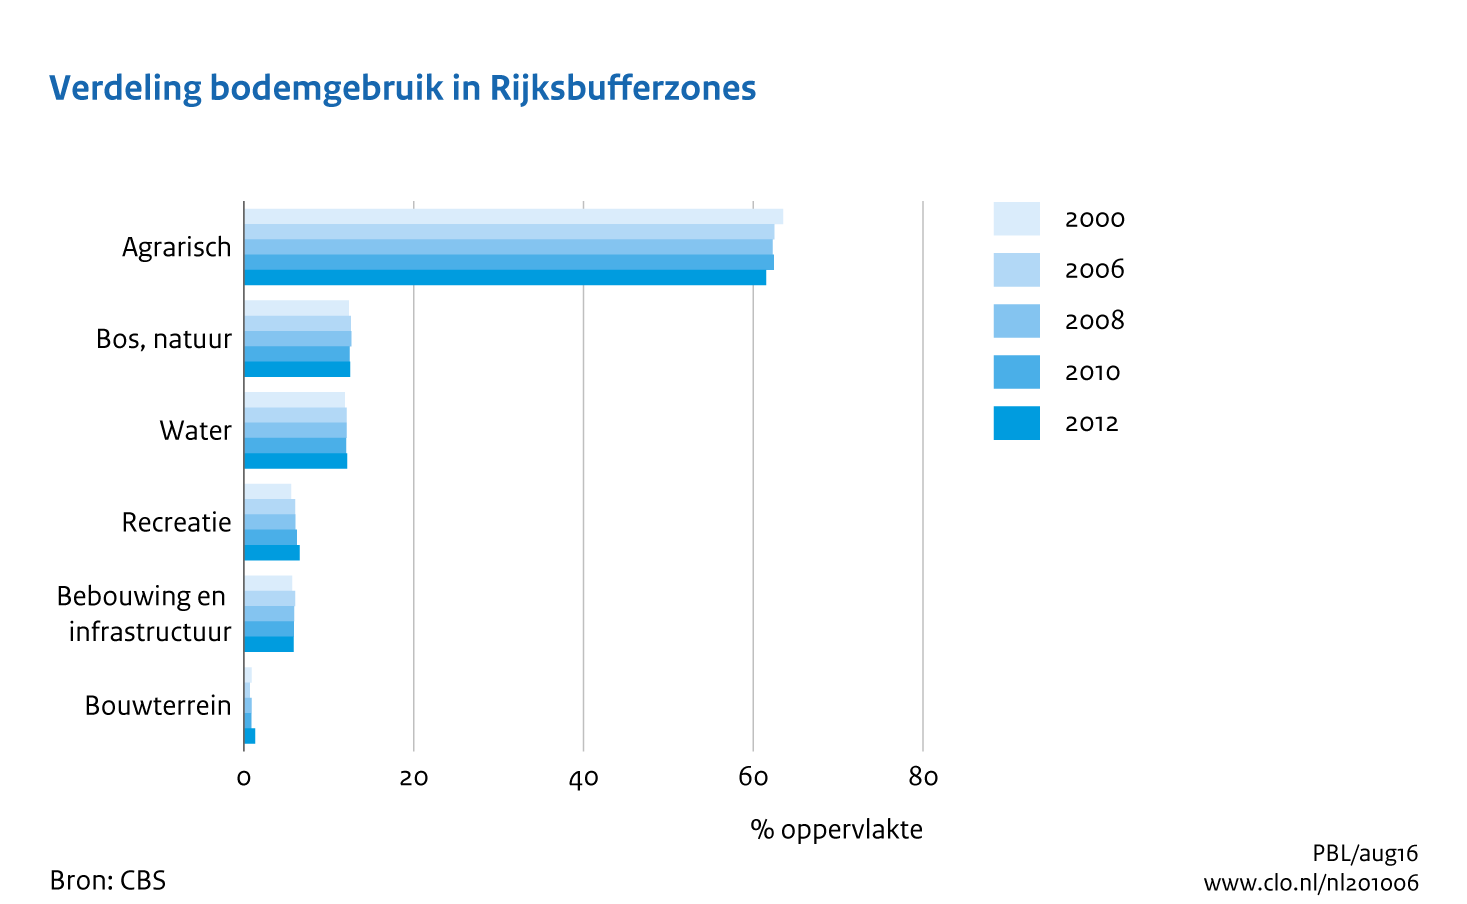 Figuur Verdeling bodemgebruik in Rijksbufferzones, 2000-2012. In de rest van de tekst wordt deze figuur uitgebreider uitgelegd.